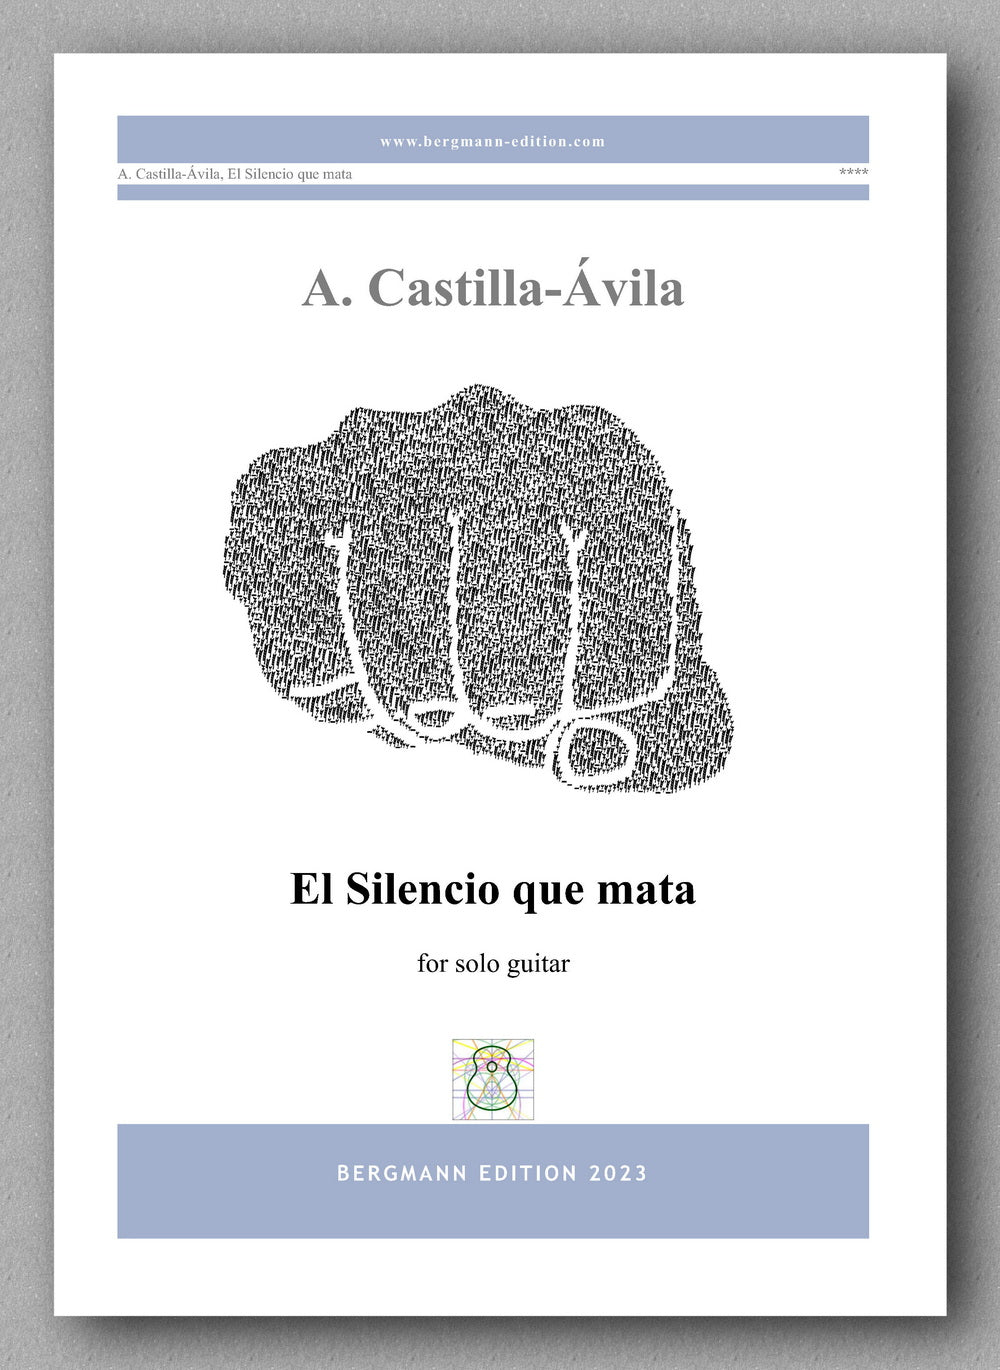 Agustin Castilla-Ávila, El Silencio que mata - preview of the cover